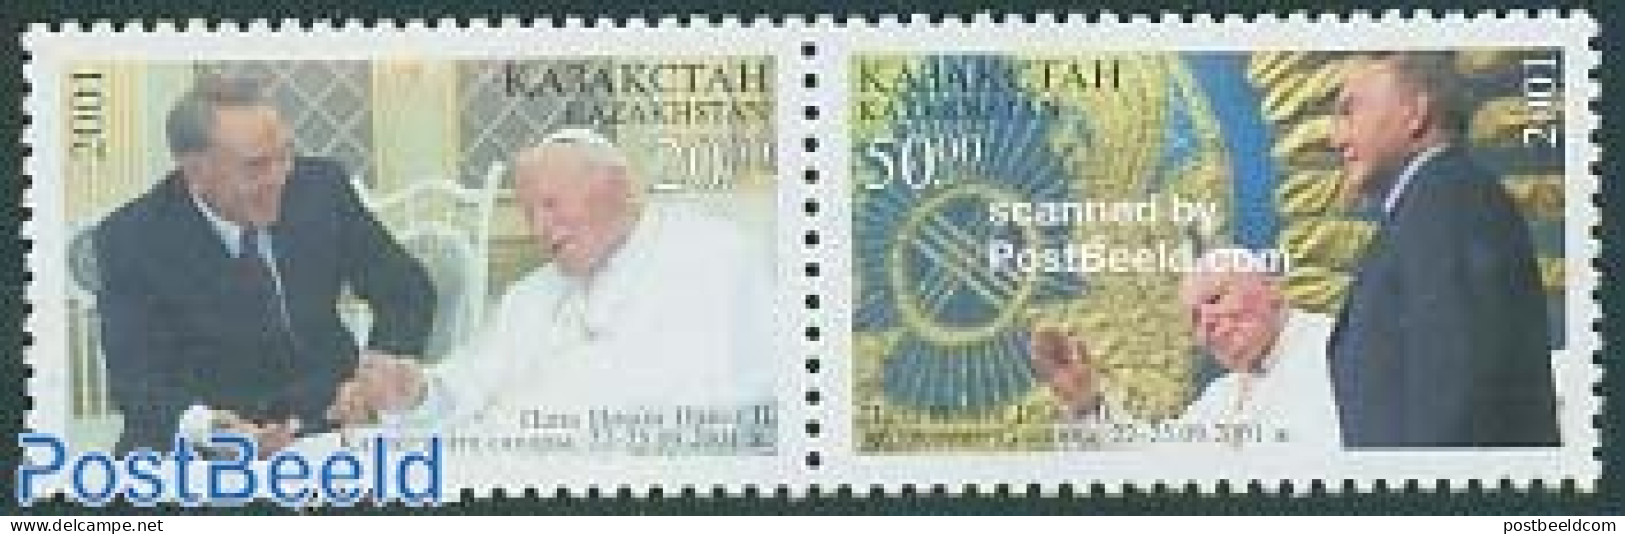 Kazakhstan 2001 Pope John Paul II 2v [:], Mint NH, Religion - Pope - Religion - Papes